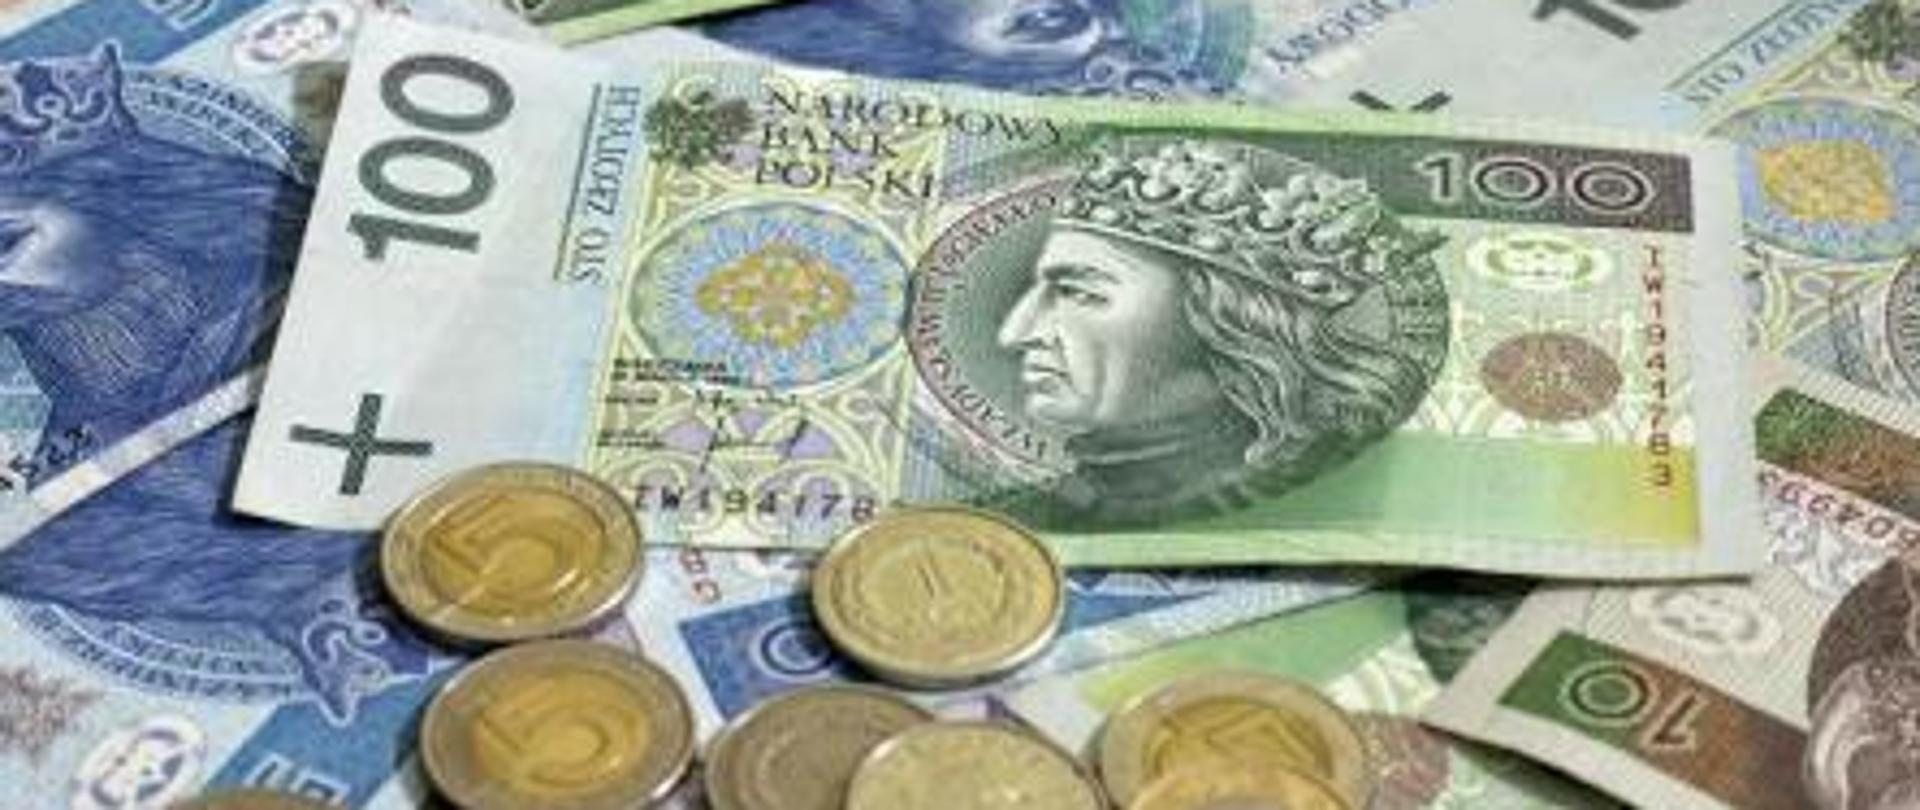 Polskie pieniądze - monety leżące na banknotach.